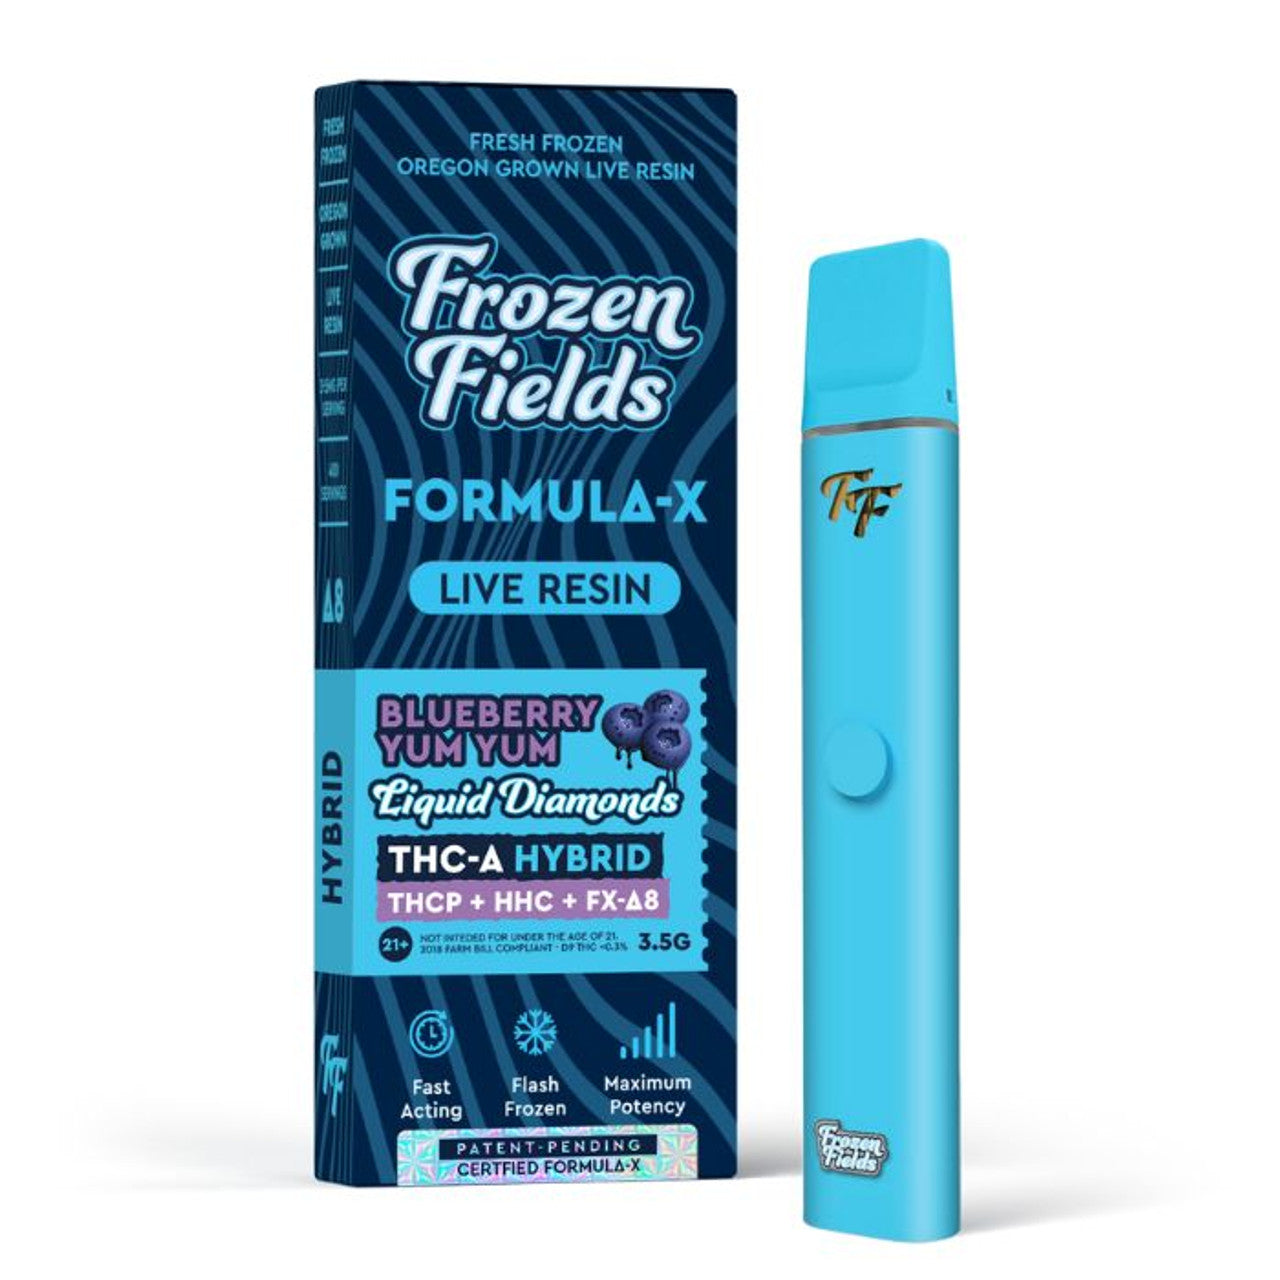 Frozen Fields Formula - X (THC-A+THCP+HHC+D8 Live Resin) - Hemp Disposable (3.5g x 5) - MK Distro